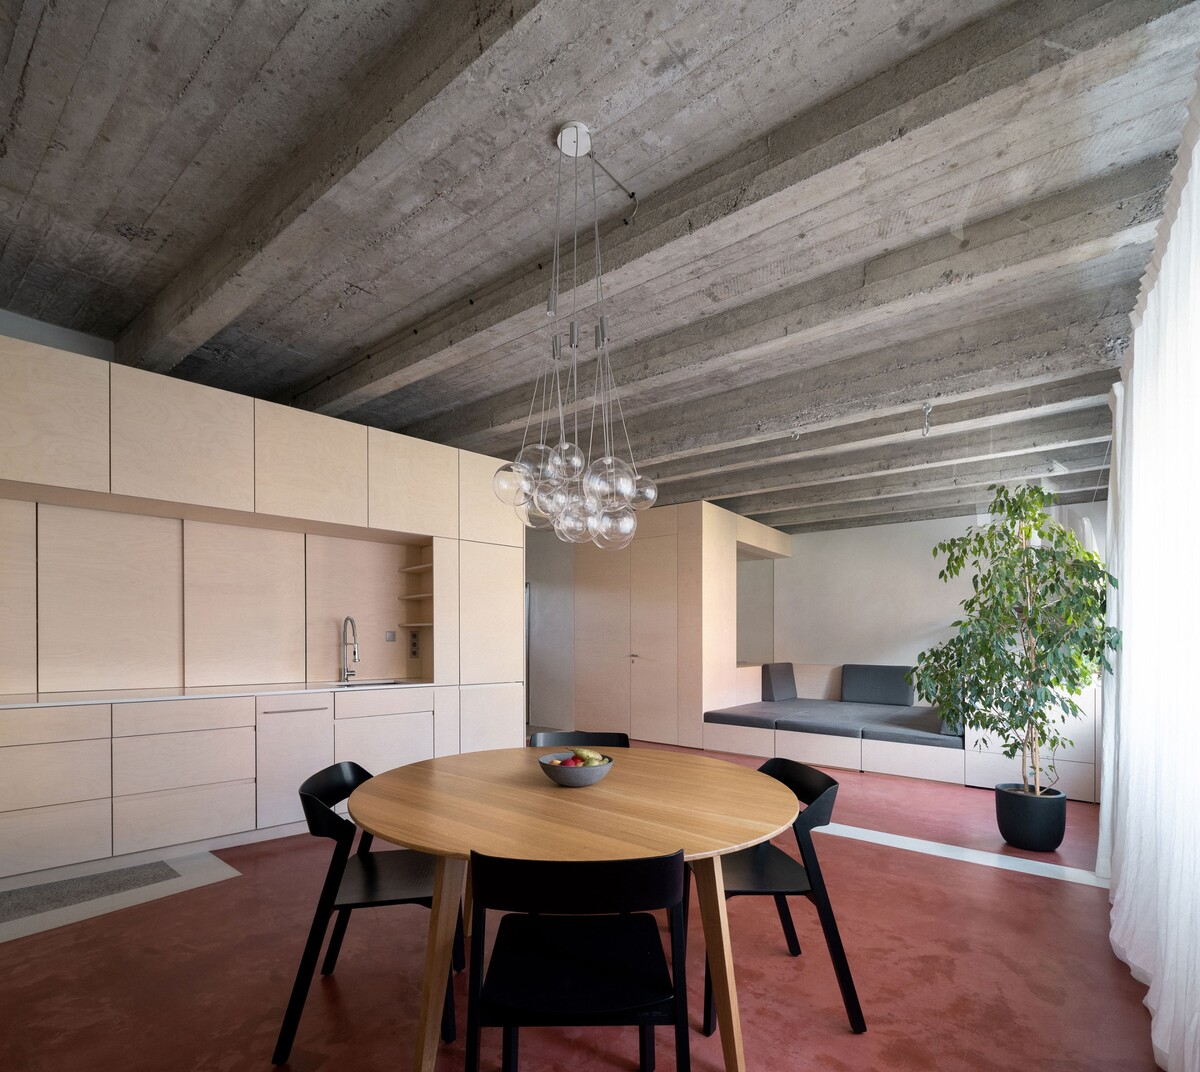 Výsledkom ročnej práce architektov je rodinné bývanie v minimalistickom funkčnom štýle, ktorému dominujú otvorené priestory. 